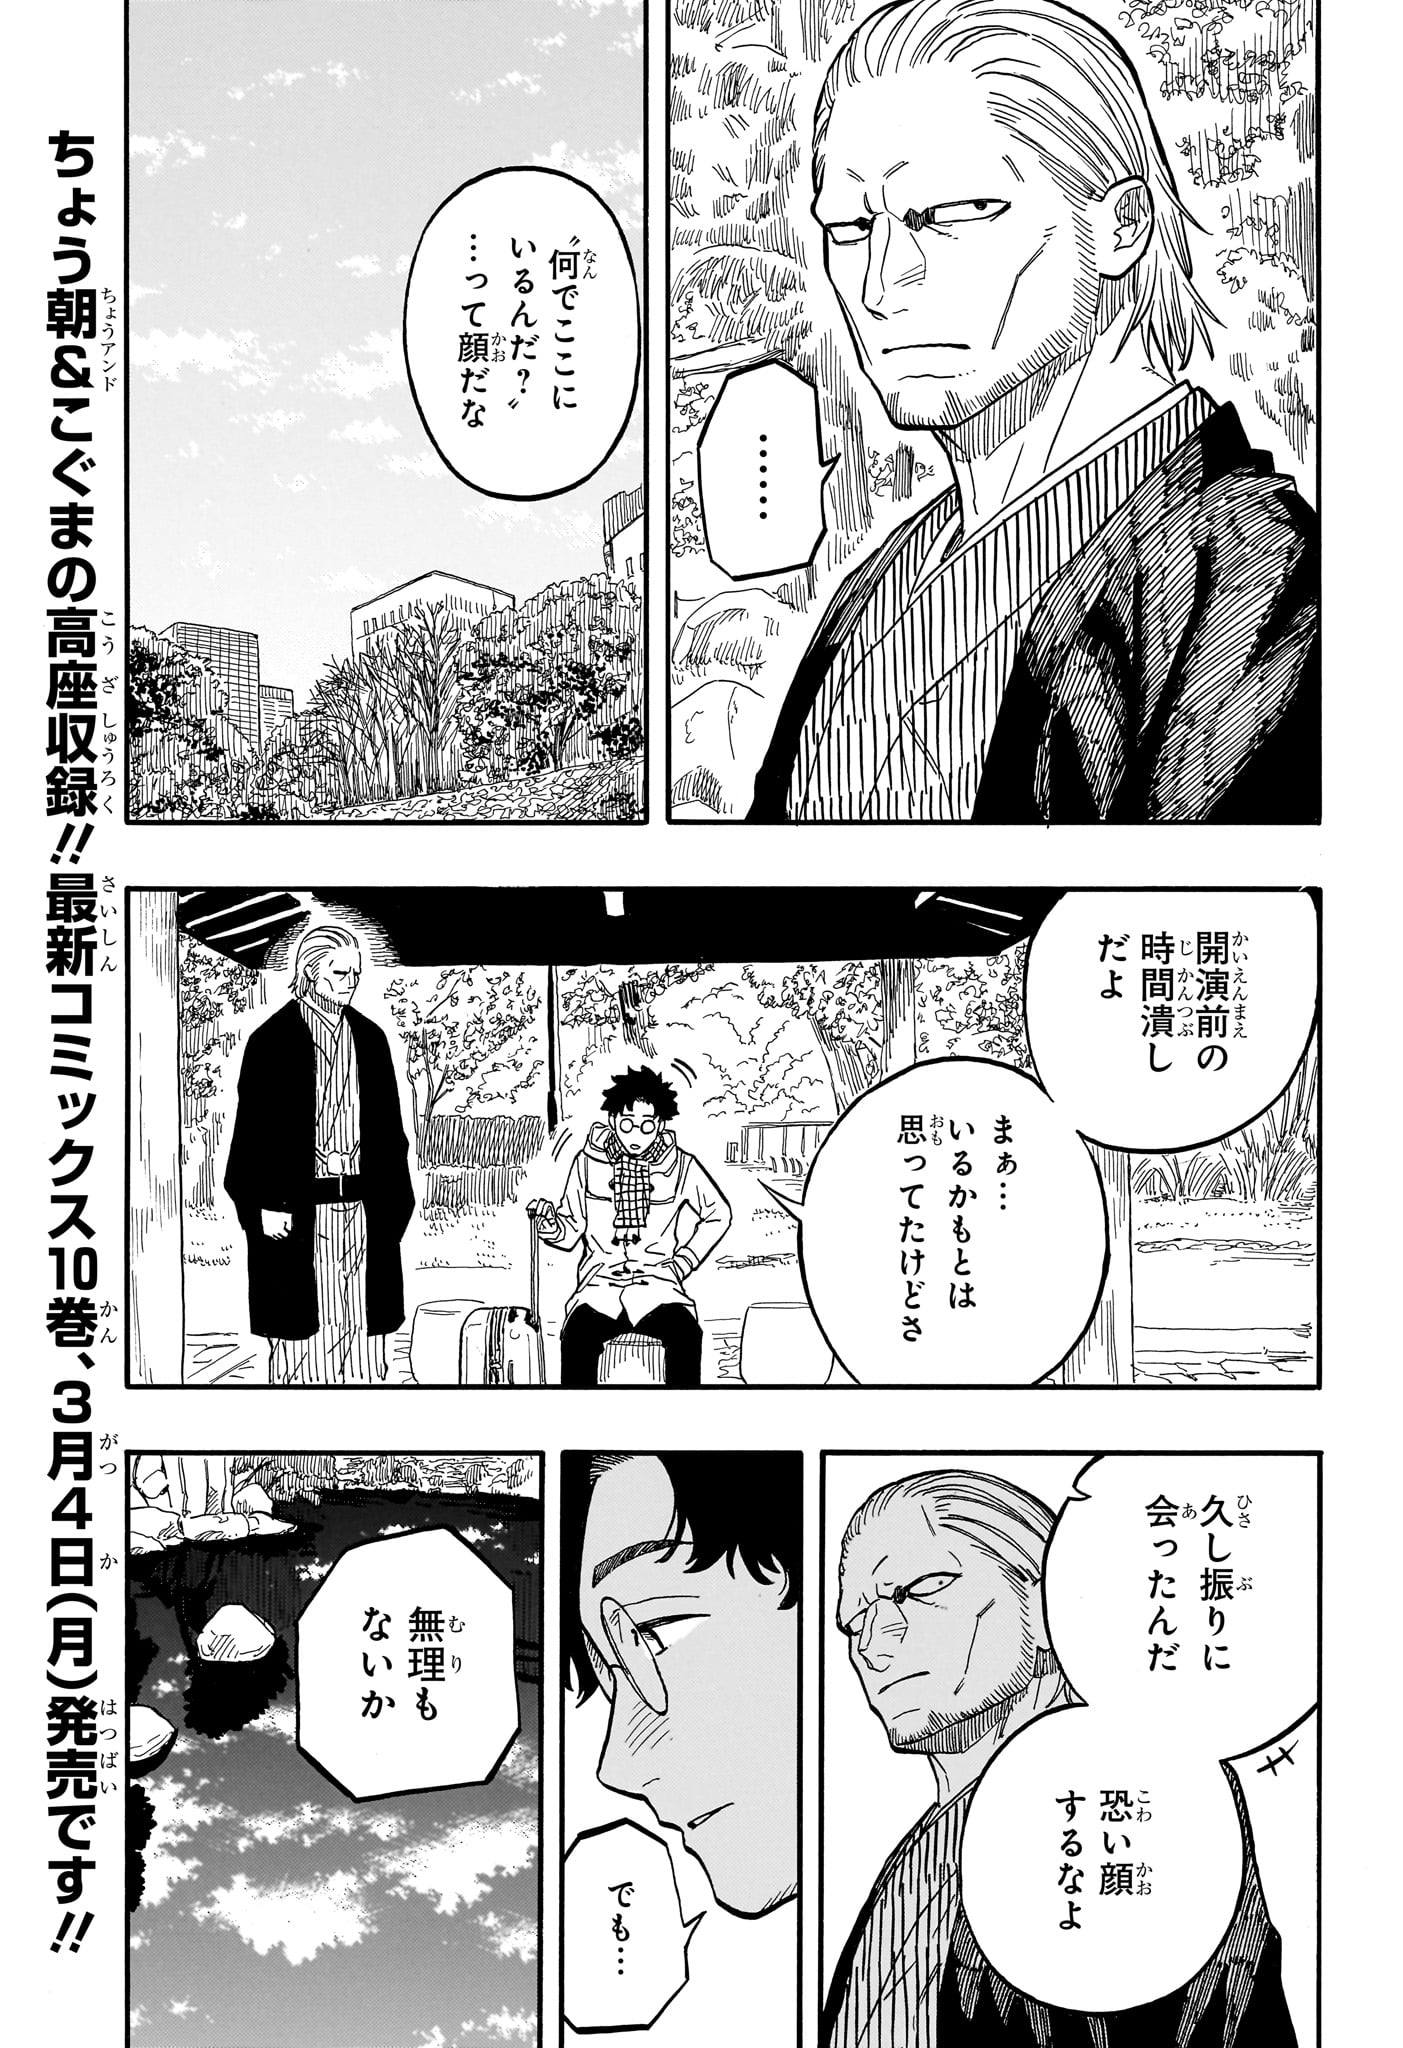 Akane-Banashi - Chapter 96 - Page 3